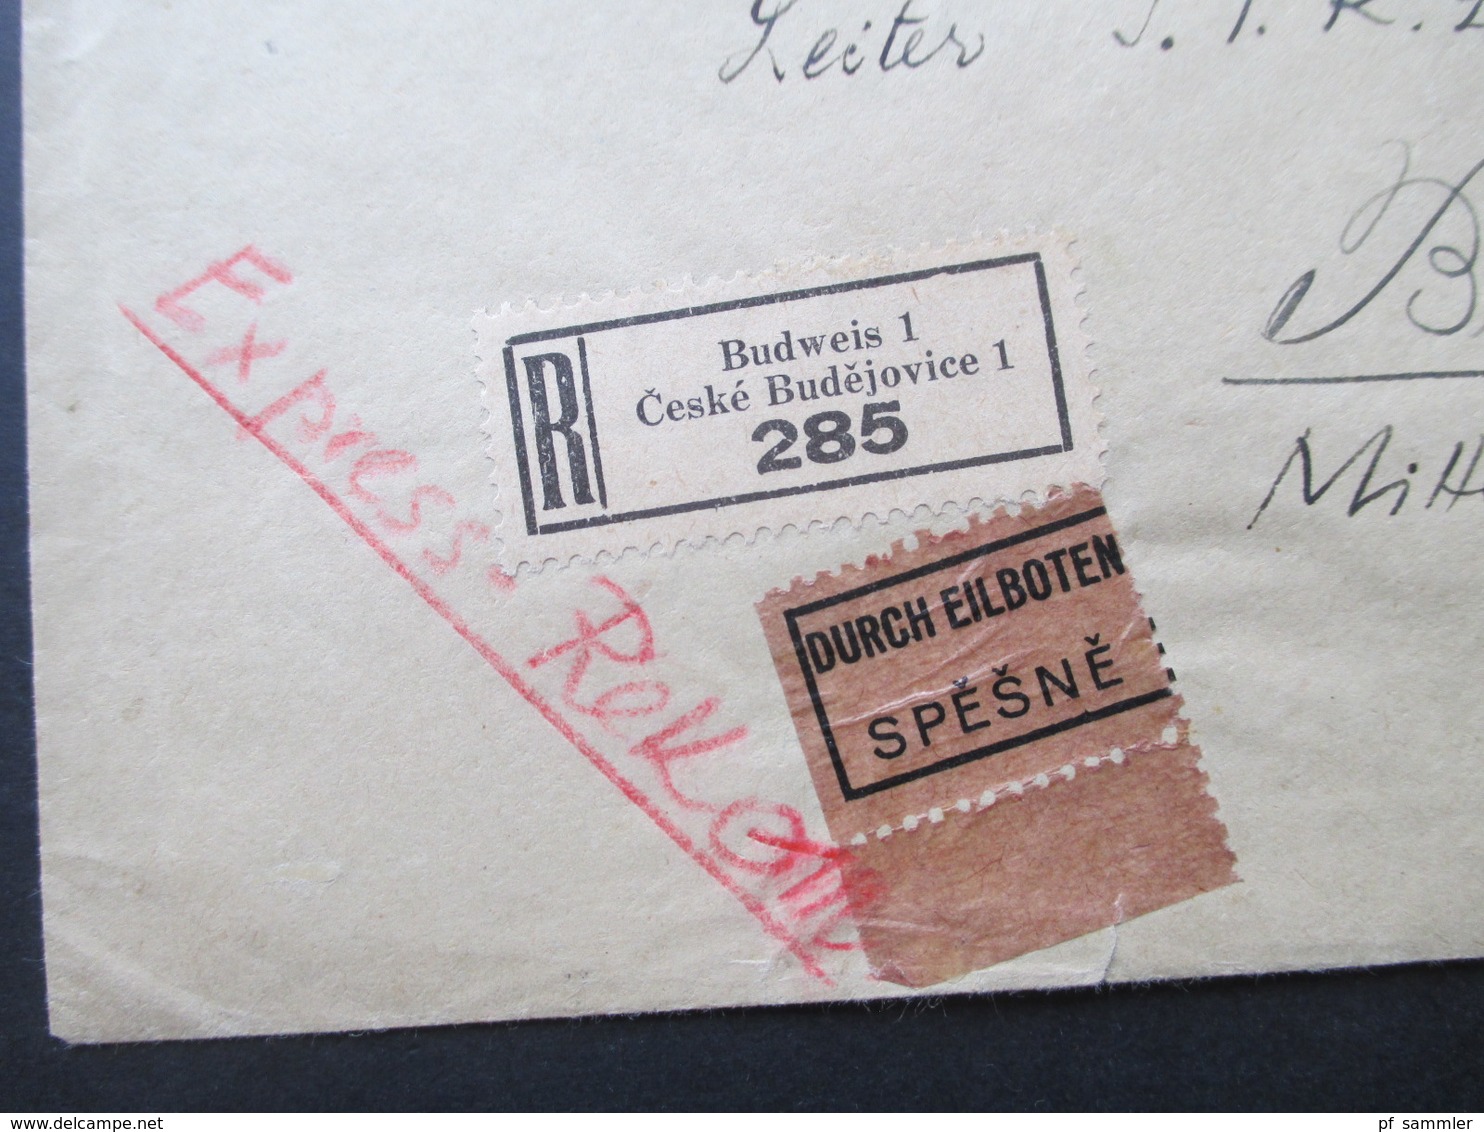 Böhmen Und Mähren 1942 MiF Einschreiben / Durch Eilboten Spesne Zweisprachiger R-Zettel Budweis 1 Ceske Budejovice 1 - Cartas & Documentos